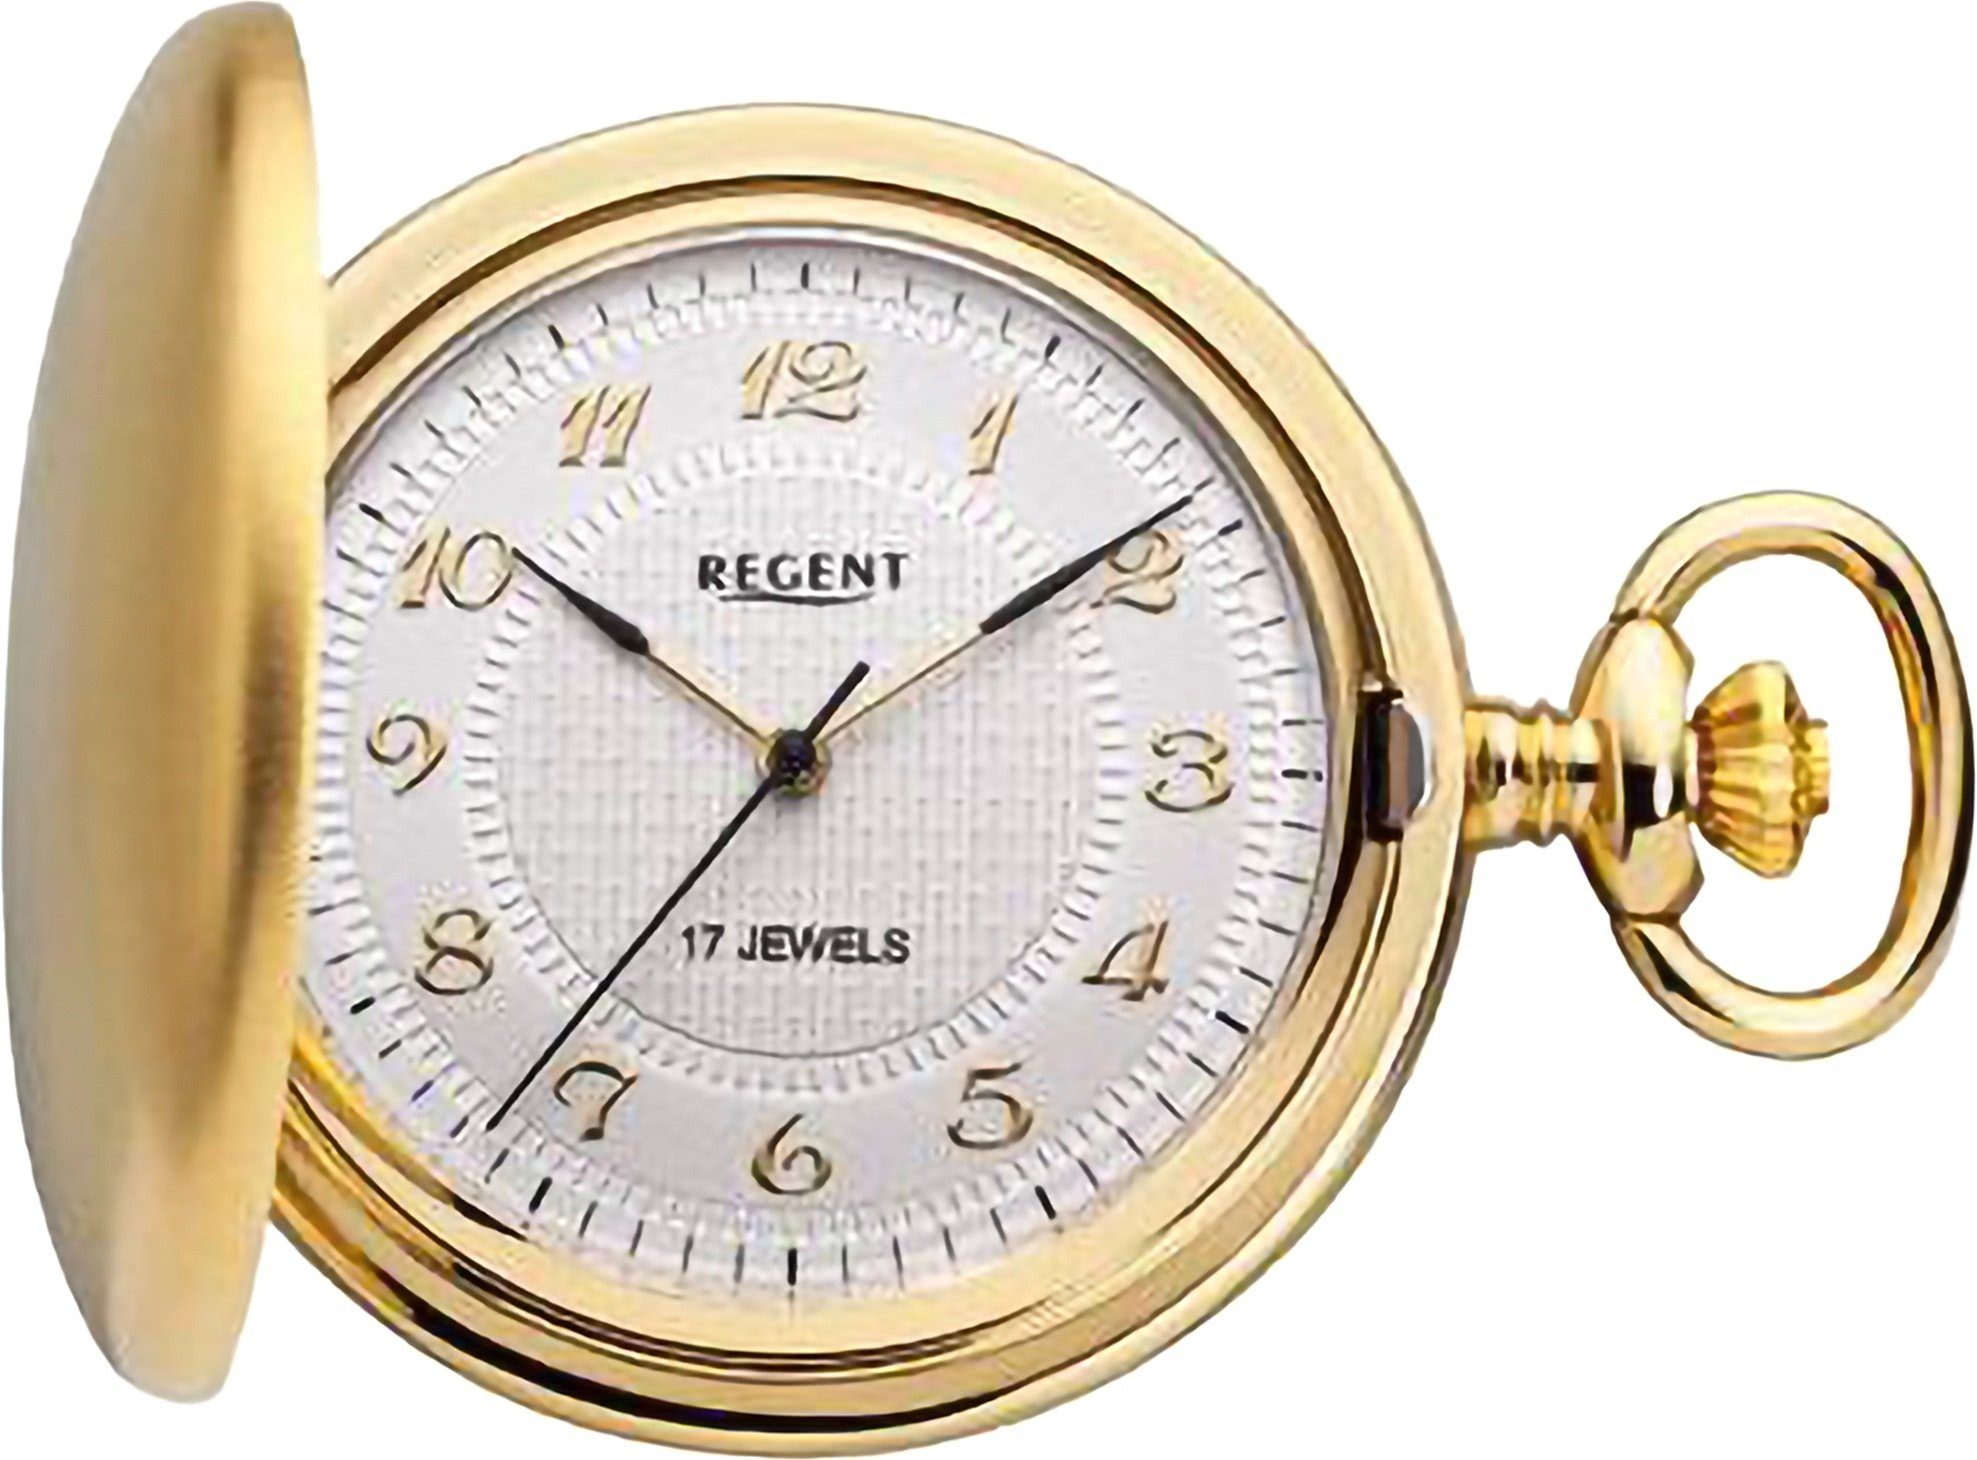 Regent Taschenuhr Regent Herren Taschenuhr (ca. groß 44mm), Elegant, Analog (Analoguhr), Metall, extra rund, Herren Uhrzeit Taschenuhr Gehäuse